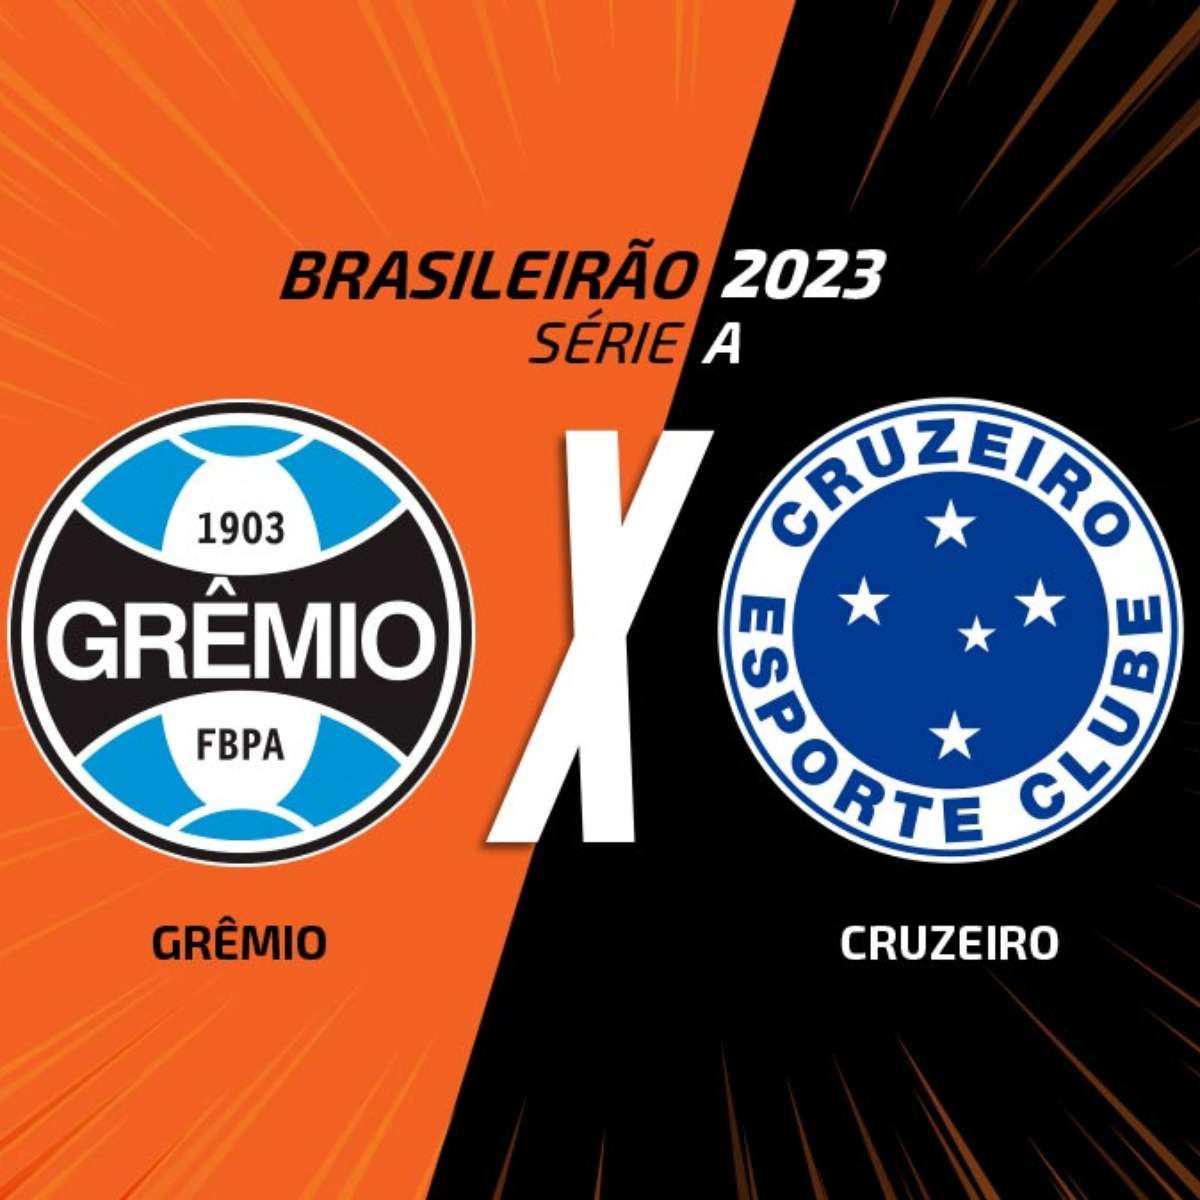 Gremio vs. Brusque: A Clash of Football Titans